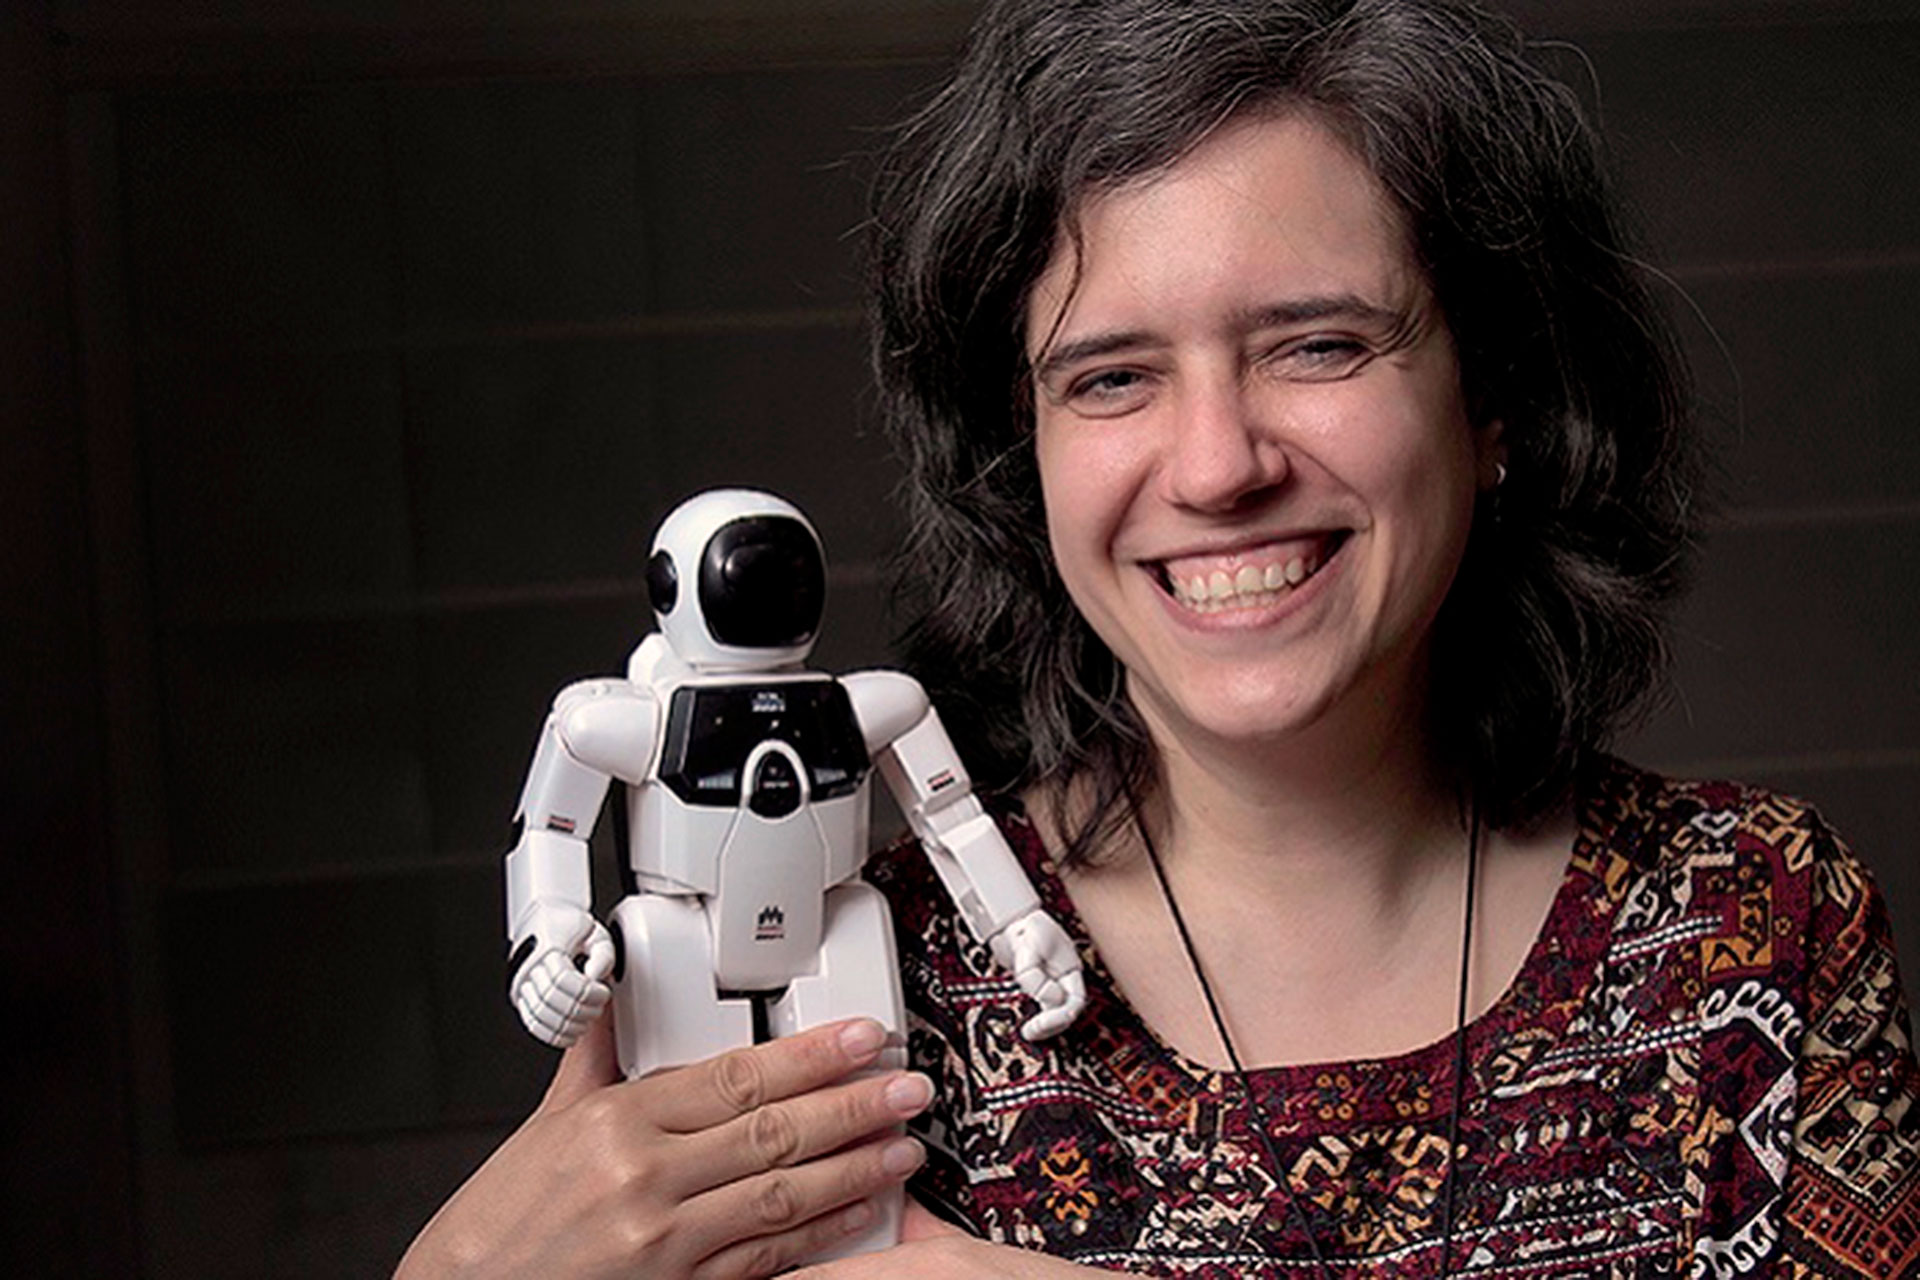 Marcela Riccillo, Dra en Ciencias de la computación de la UBA y Experta en Inteligencia Artificial y Robótica, explica profundamente su significado